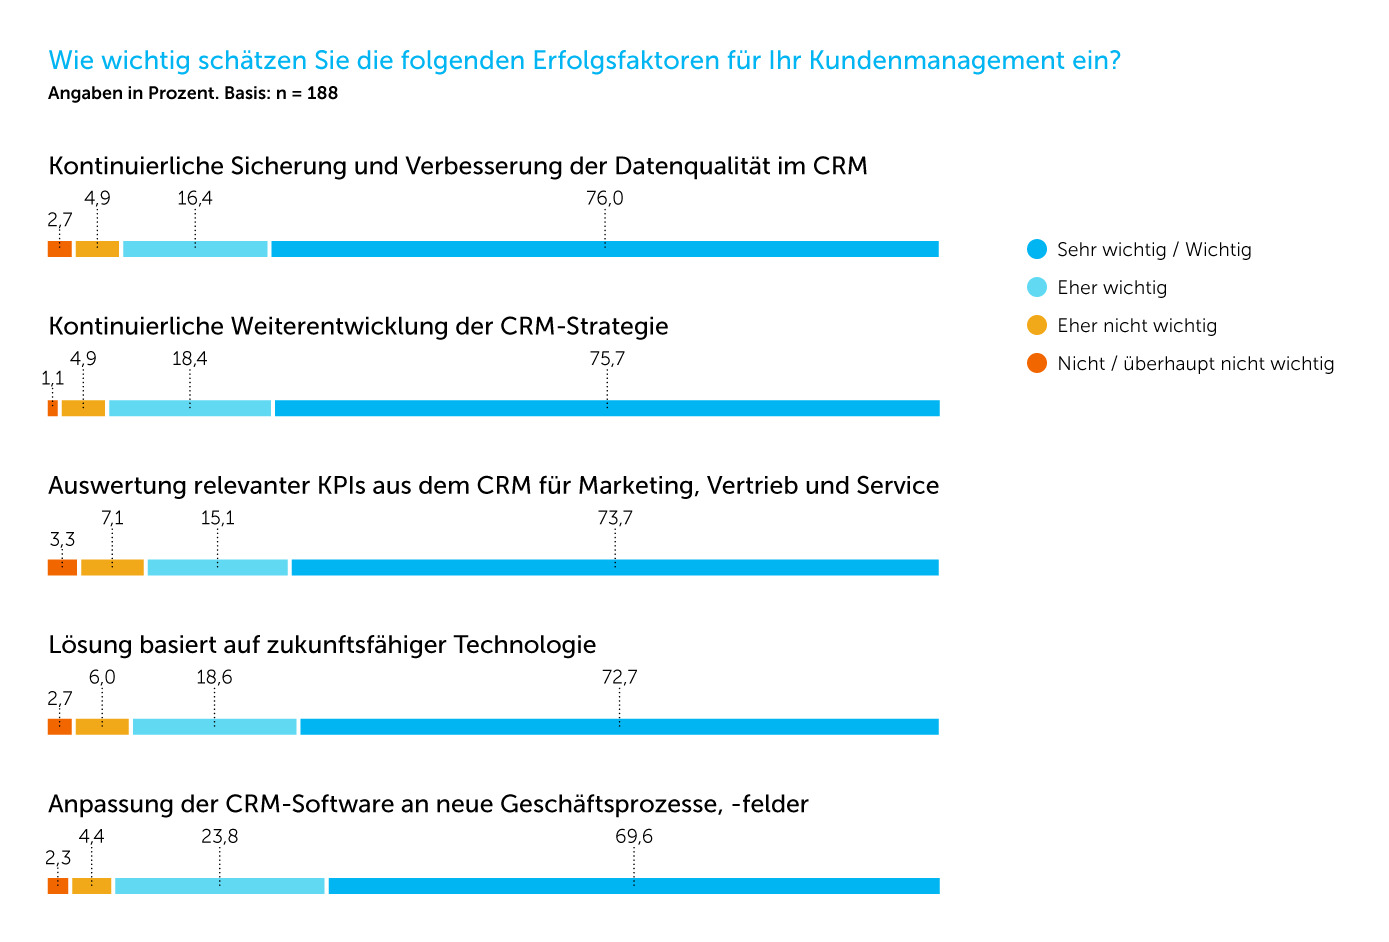 (Bild: CRM-Monitor 2019 Maschinenbau: Die Customer Experience als Erfolgsfaktor von morgen, IDG Research Services & Adito, München/Geisenhausen 2019)